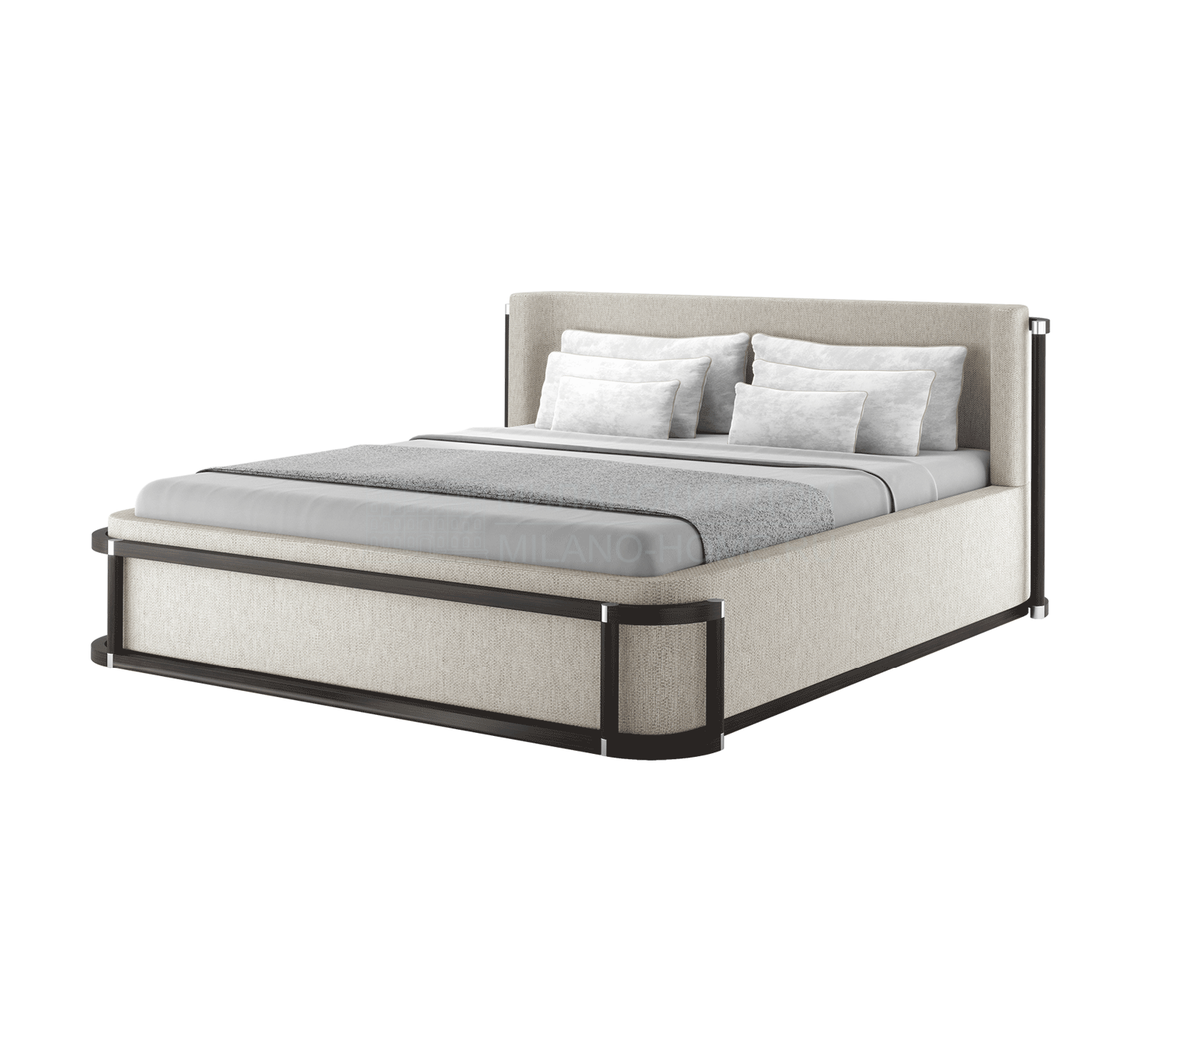 Кровать с мягким изголовьем Como bed из Португалии фабрики FRATO